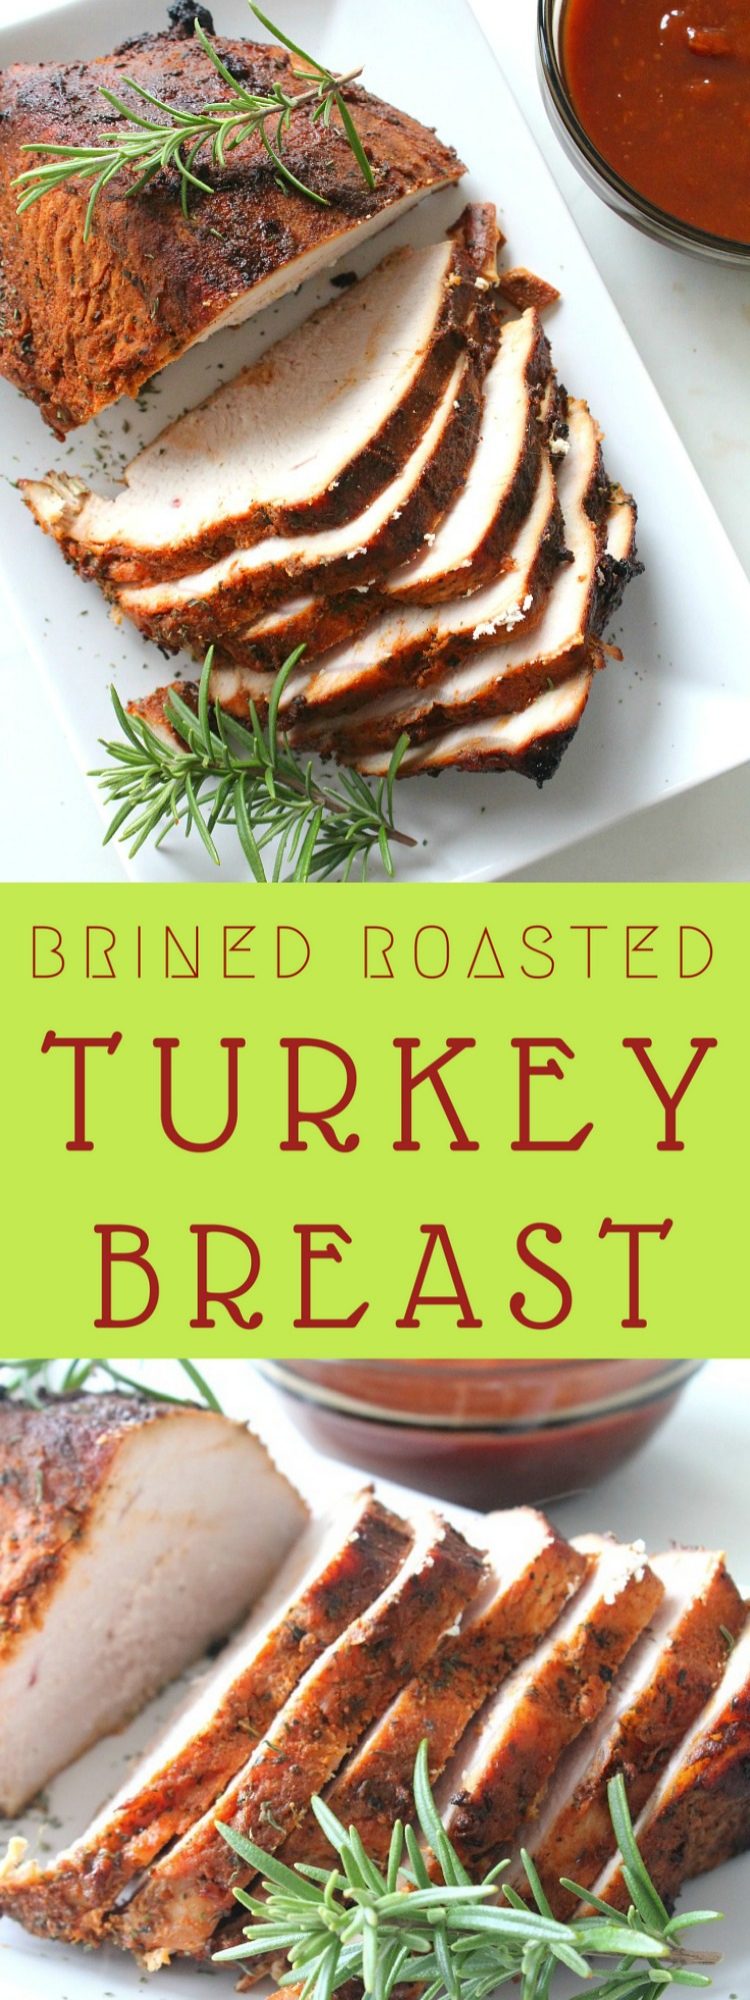 Brined roasted turkey breast